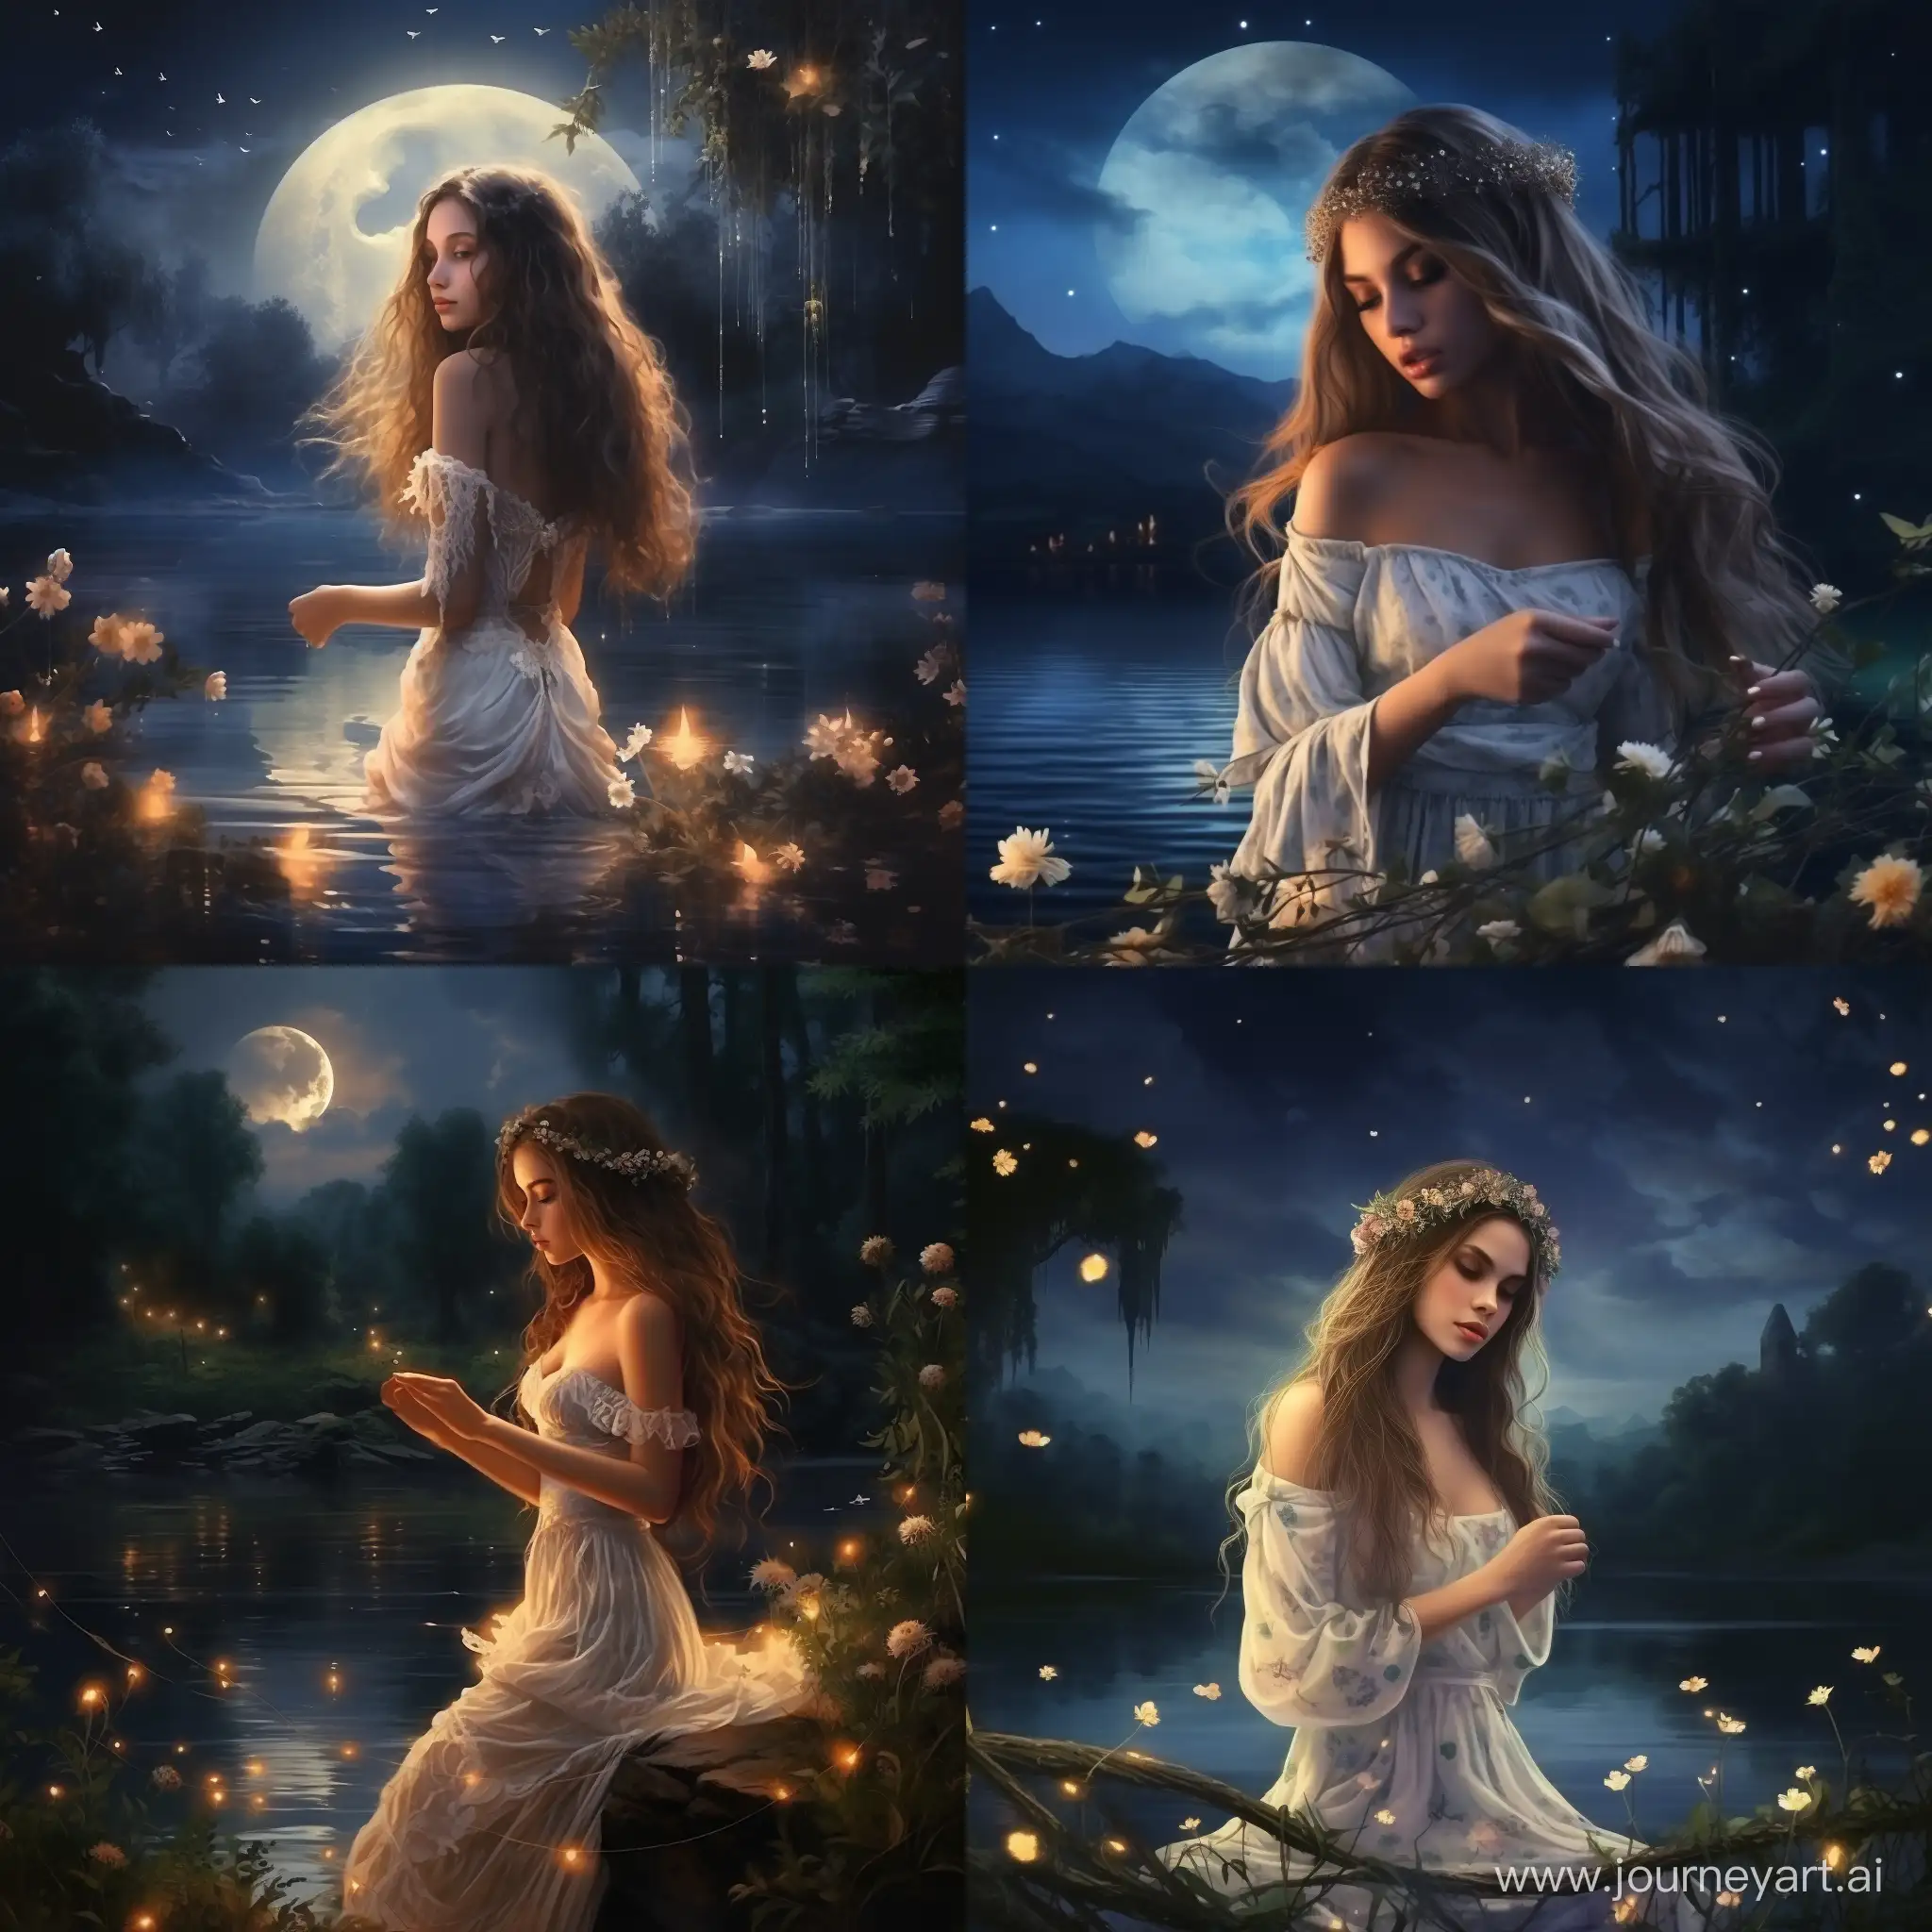 красивая девушка с длинными роскошными волосами, в белом сарафане, держит цветочный венок, на берегу реки ночью, крупным планом, свечение светлячков, отражение в реке звезд и луны, туман, дымка, таинственная мистическая атмосфера, ночь Купало, реализм